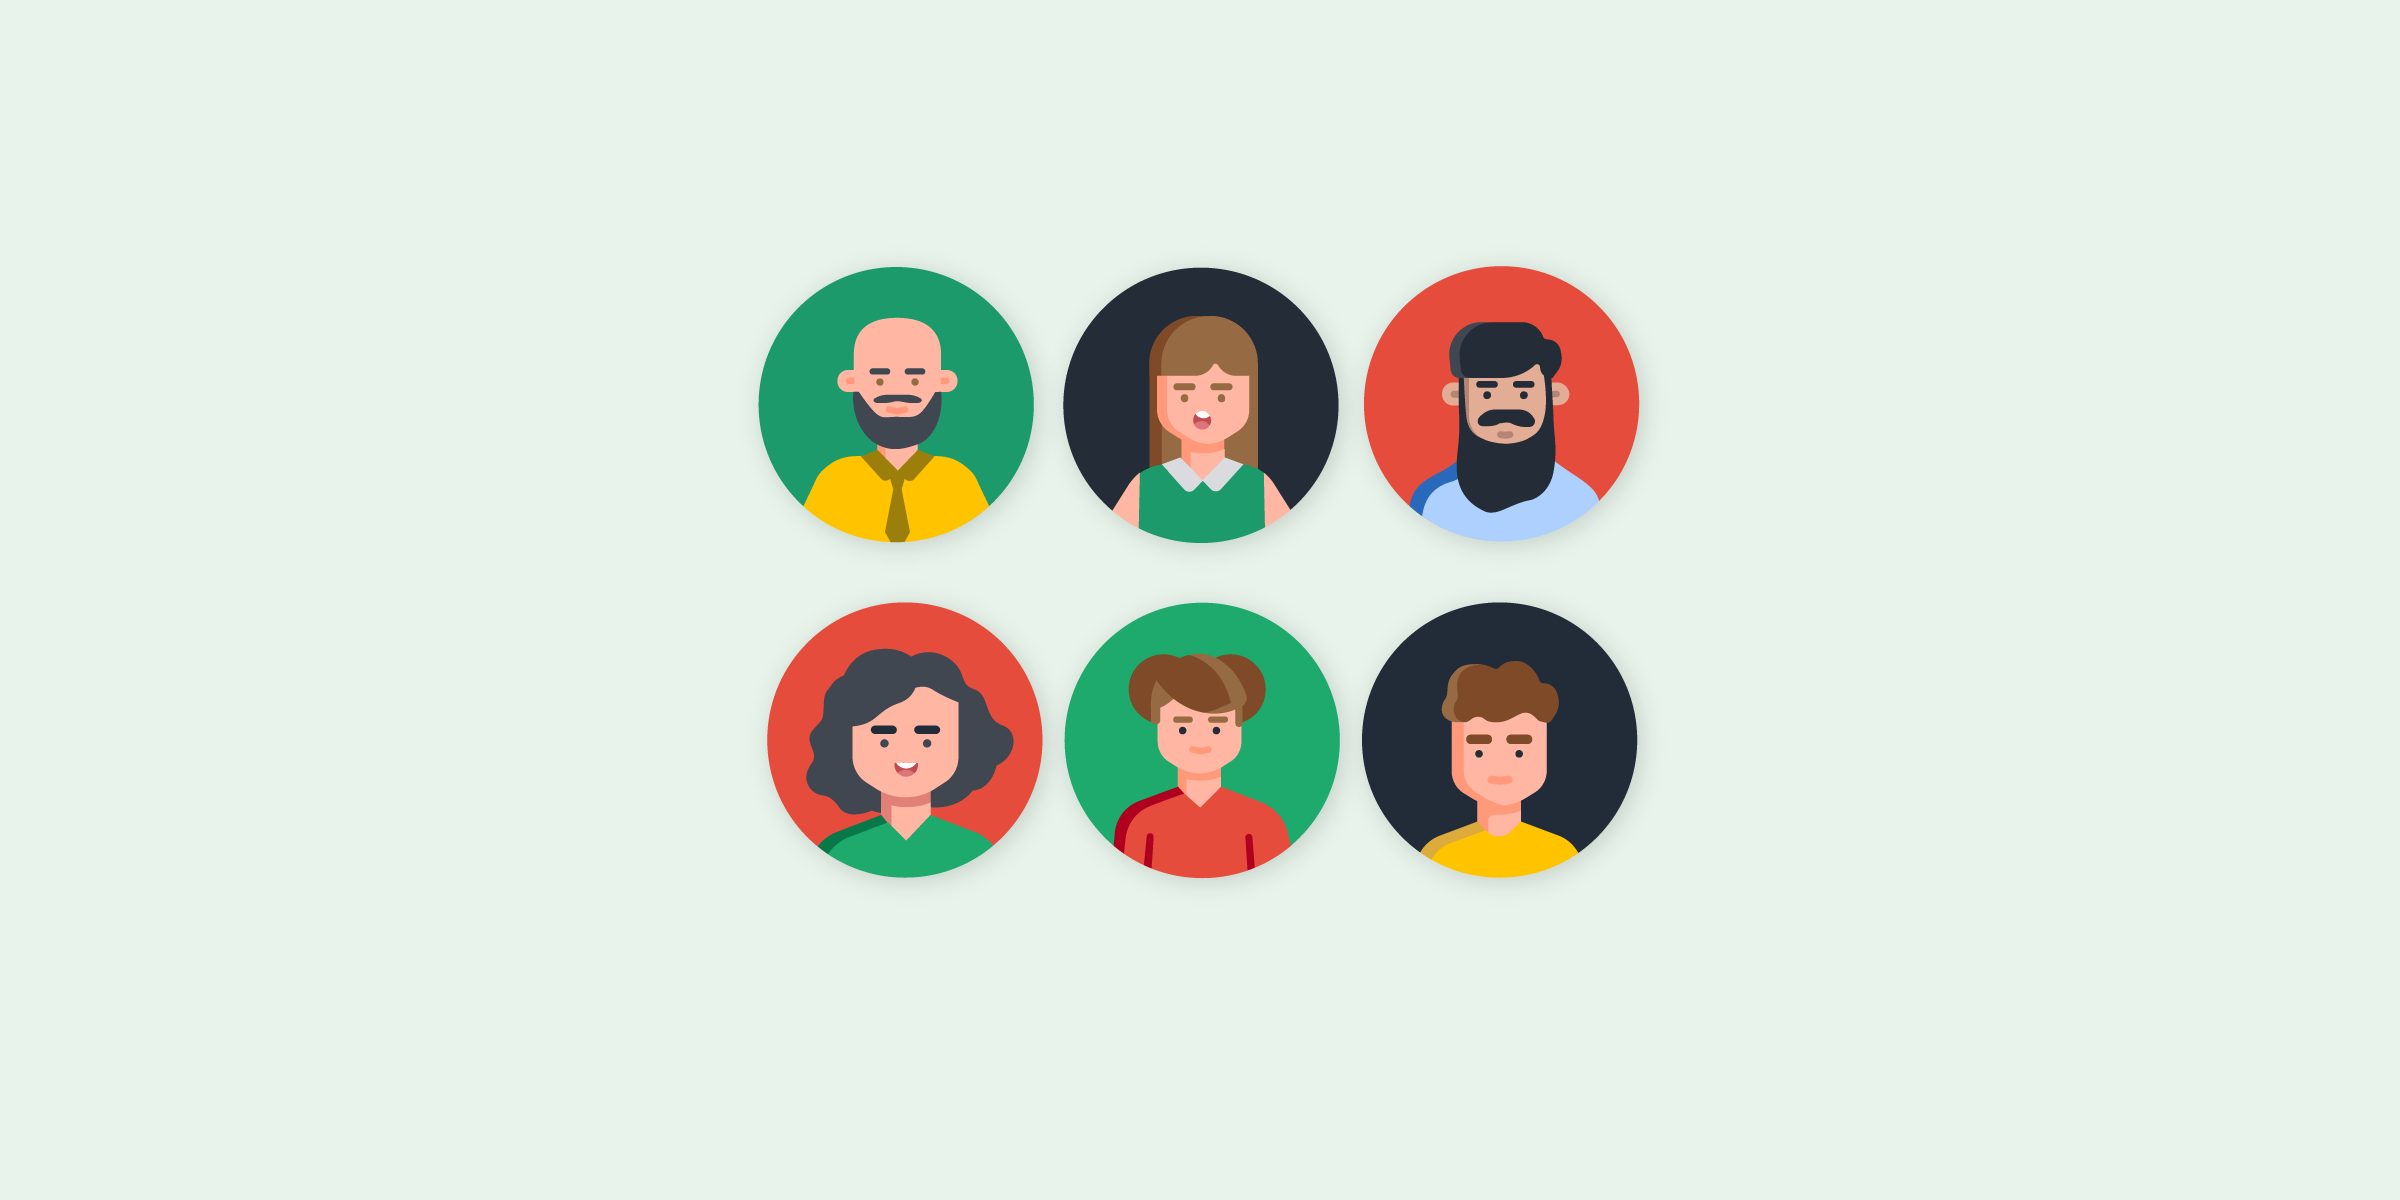 Ilustración de personas diversas, tres son masculinos y 3 femeninas.